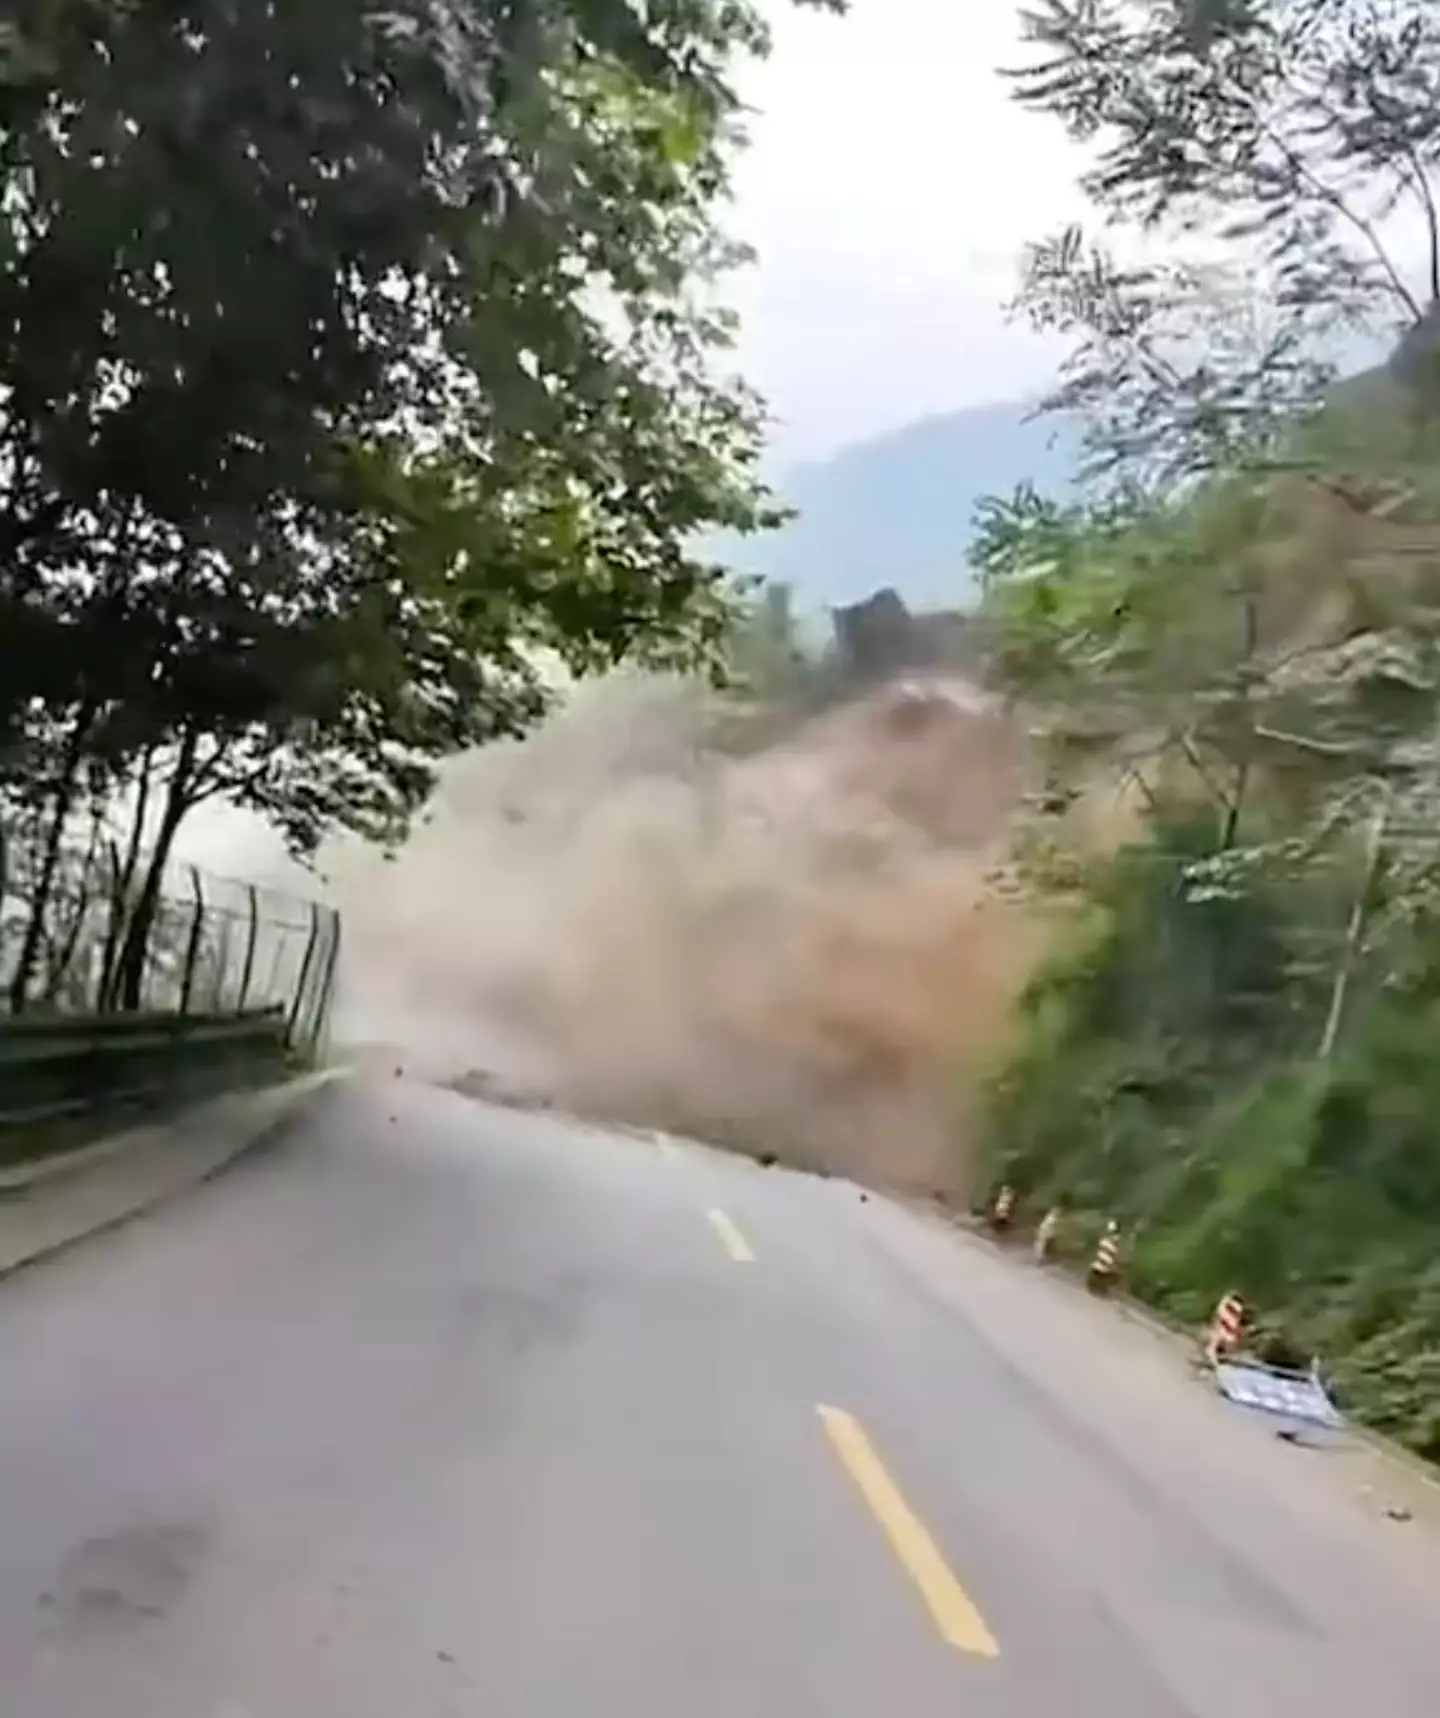 The landslide crashed over the road.